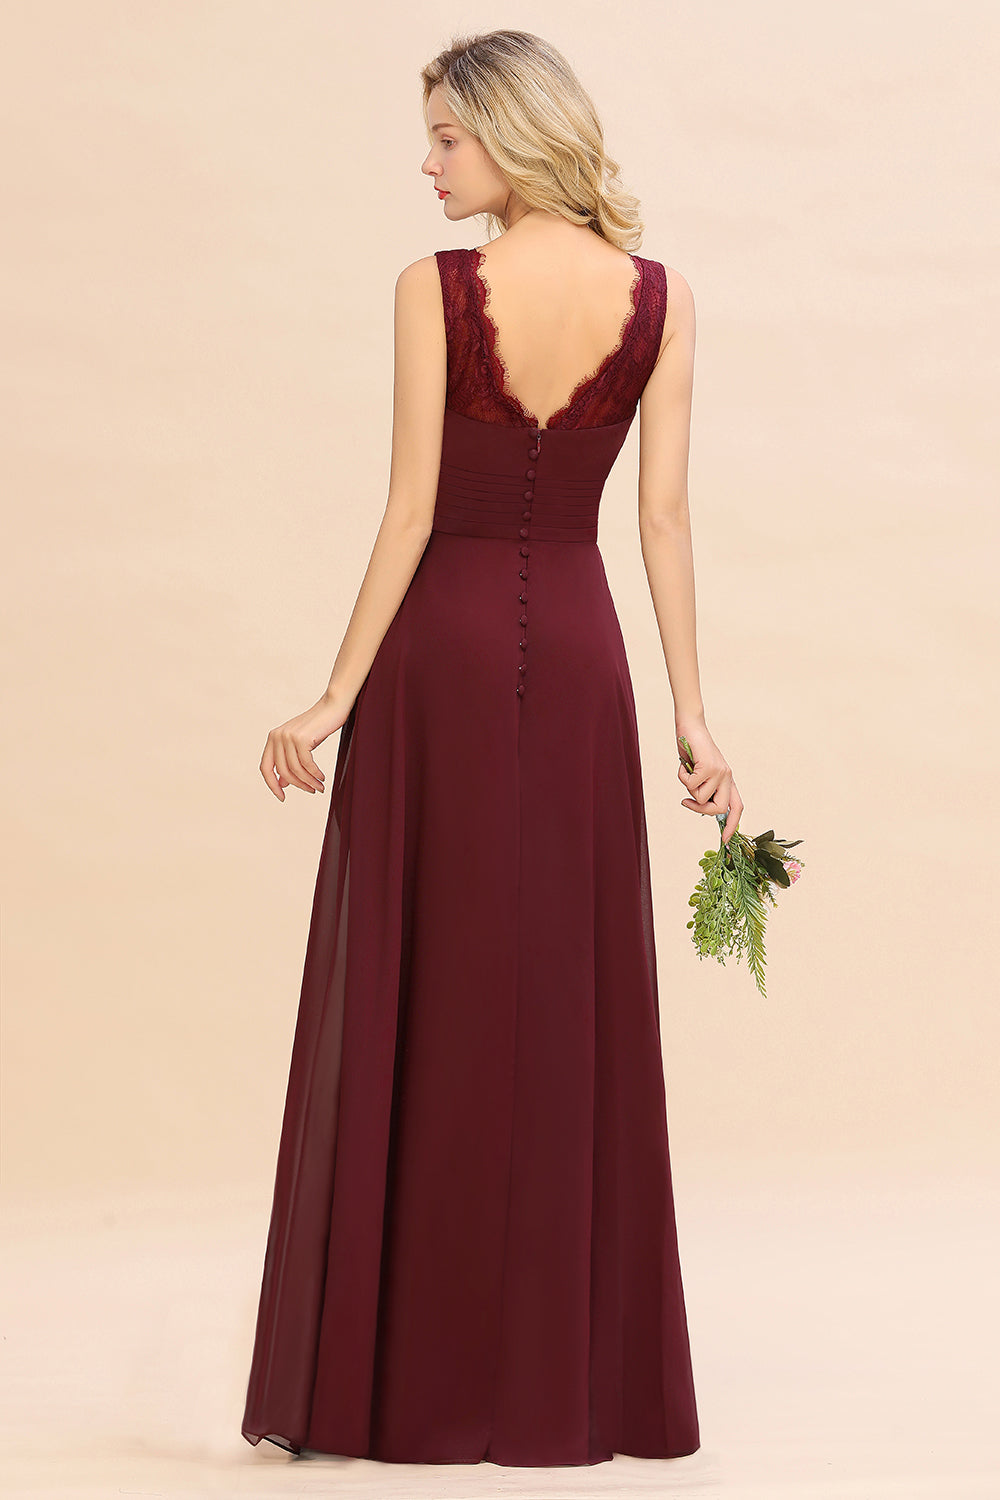 Elegant Lace V-Neck Burgundy Chiffon Bridesmaid Dresses with Ruffle-27dress